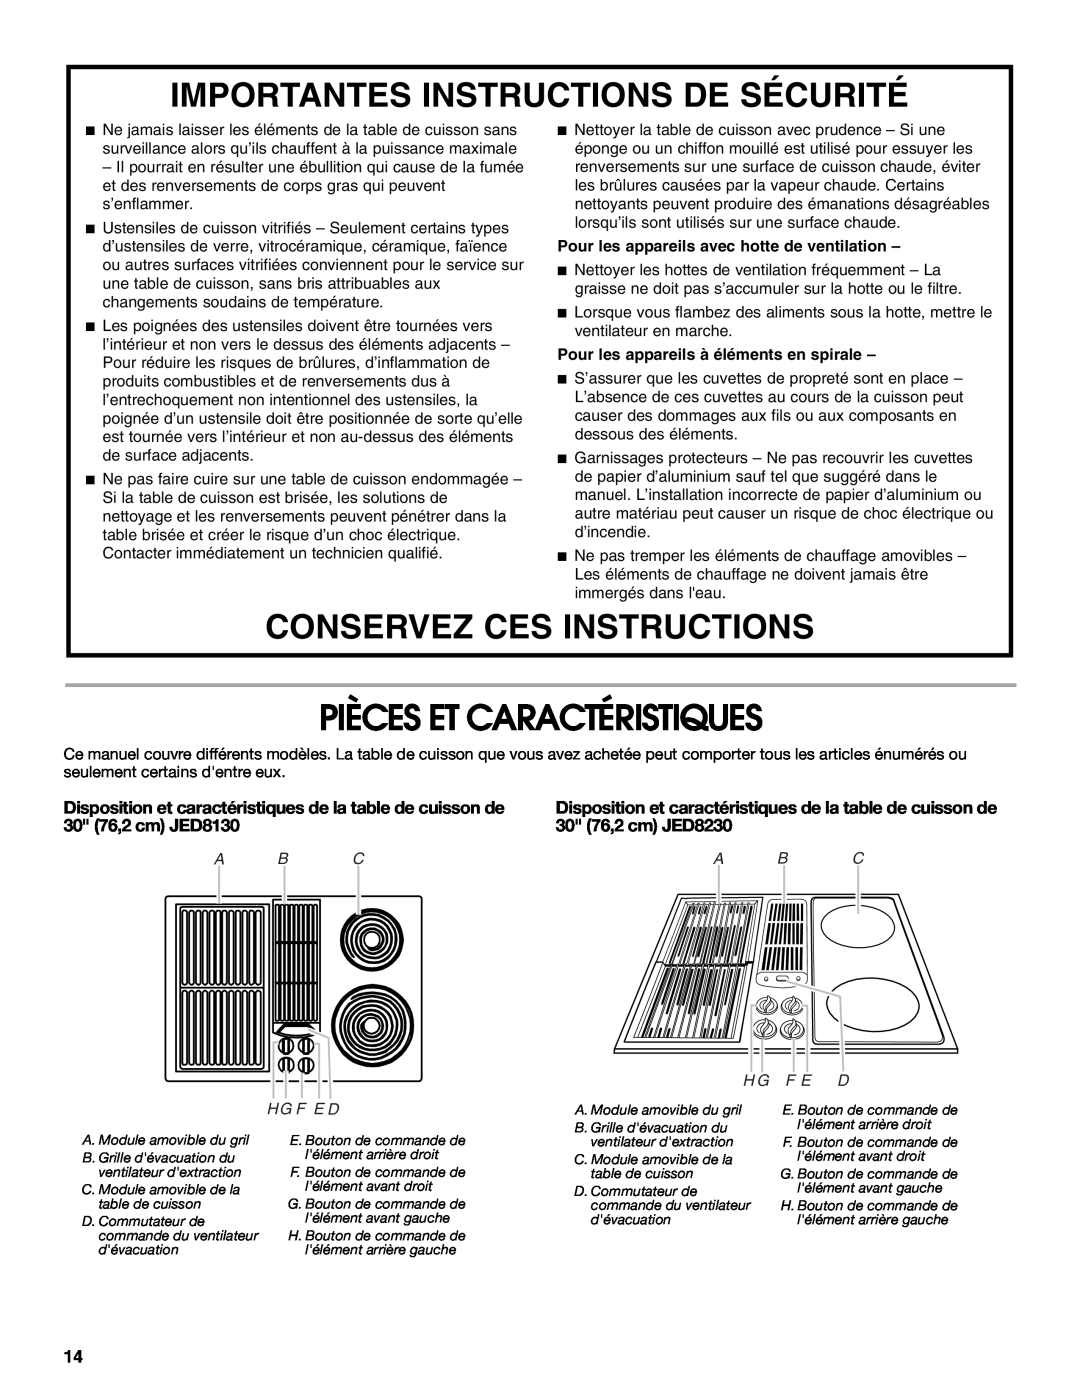 Jenn-Air W10298938A manual Pièces Et Caractéristiques, Importantes Instructions De Sécurité, Conservez Ces Instructions 